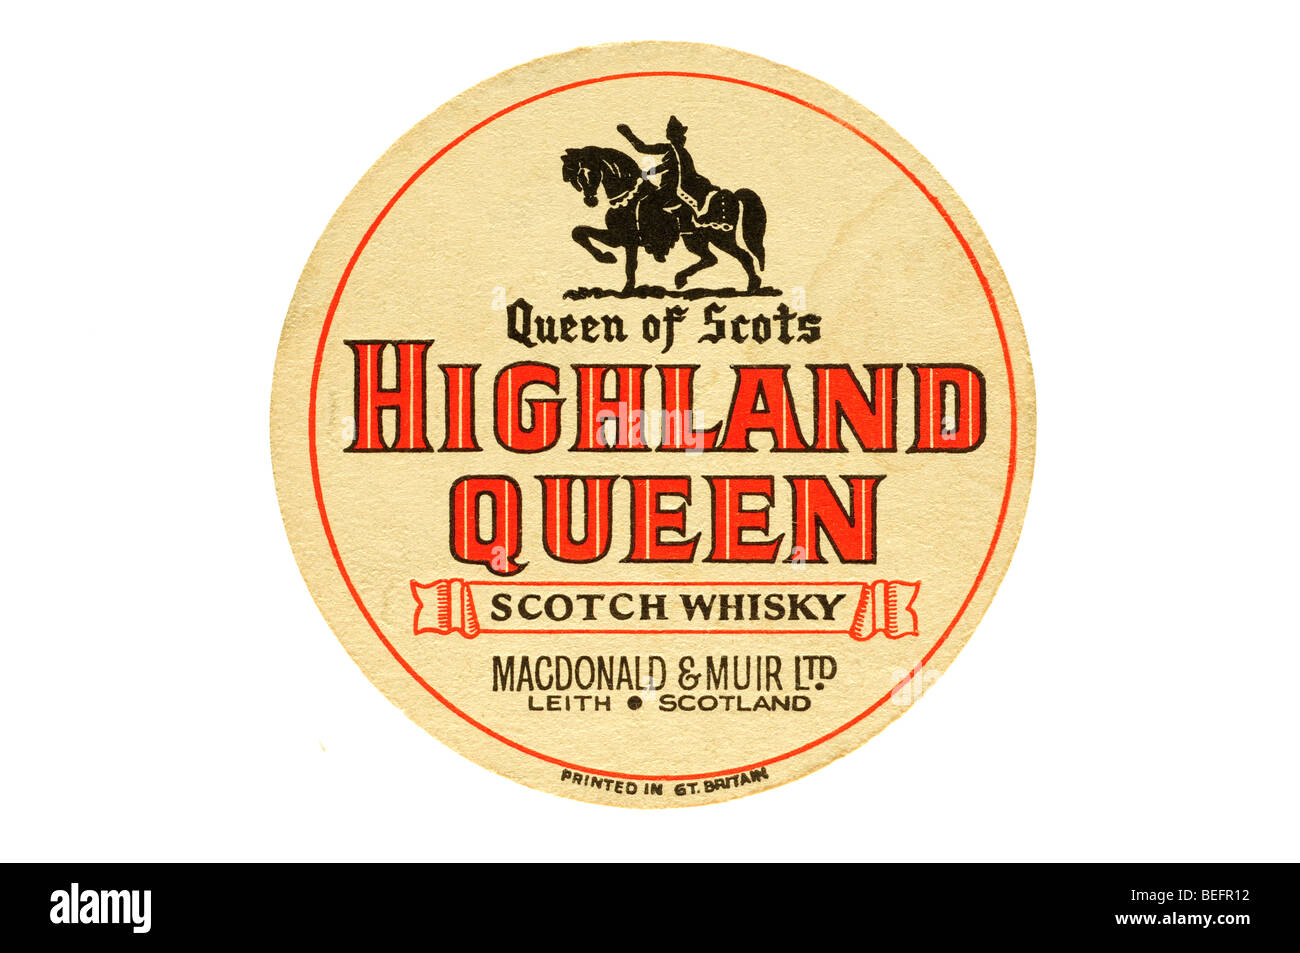 queen of scots highland queen scotch whisky macdonald & muir ltd leith scotland Stock Photo